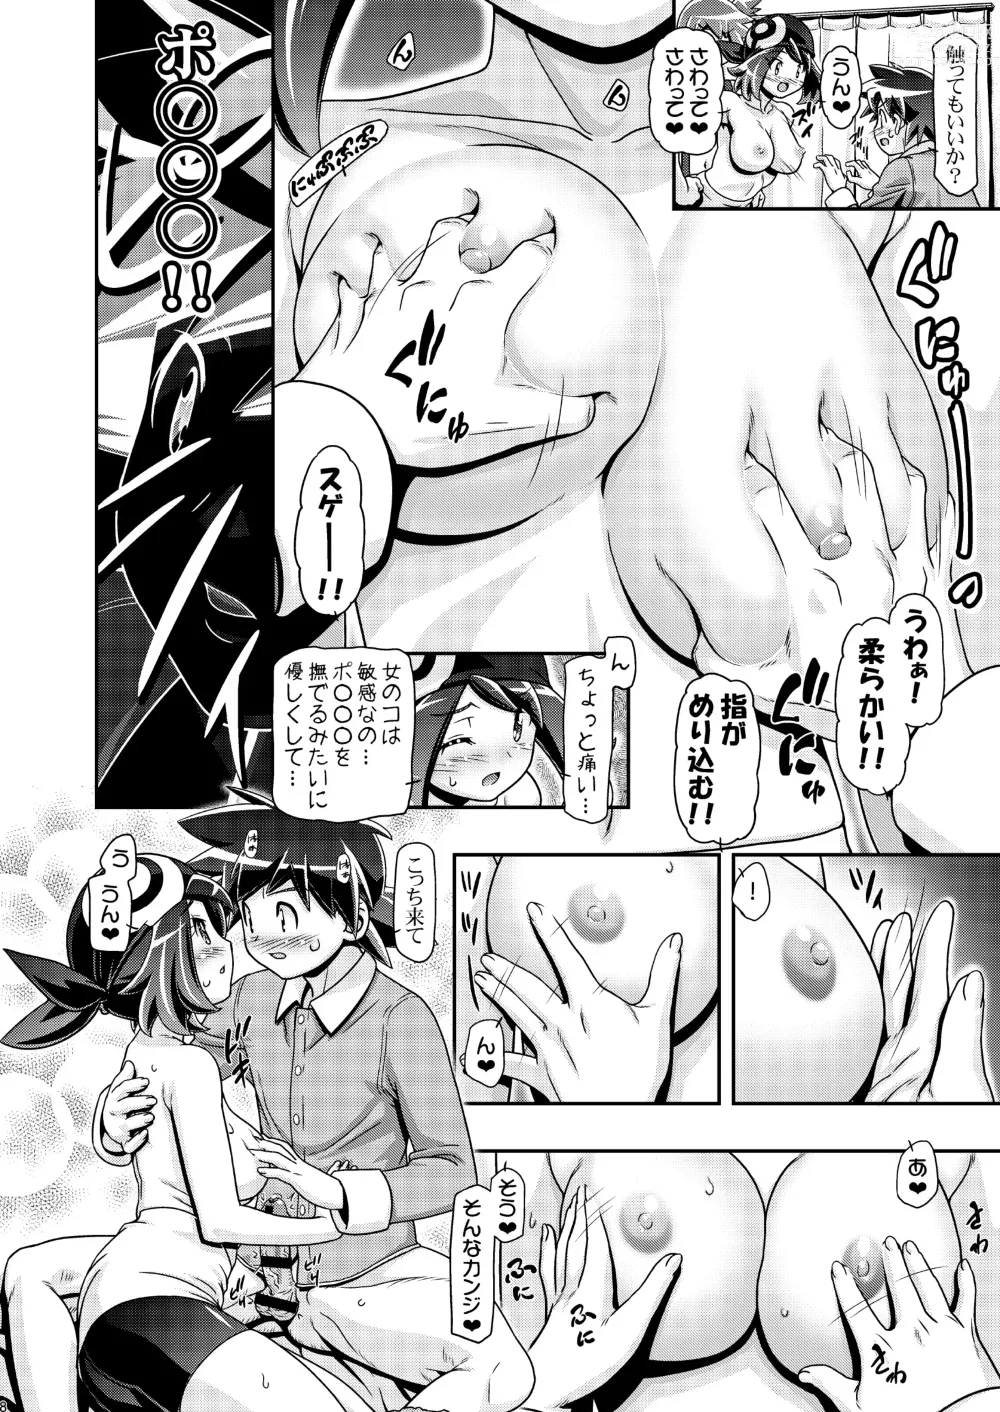 Page 7 of doujinshi PM GALS XY 2